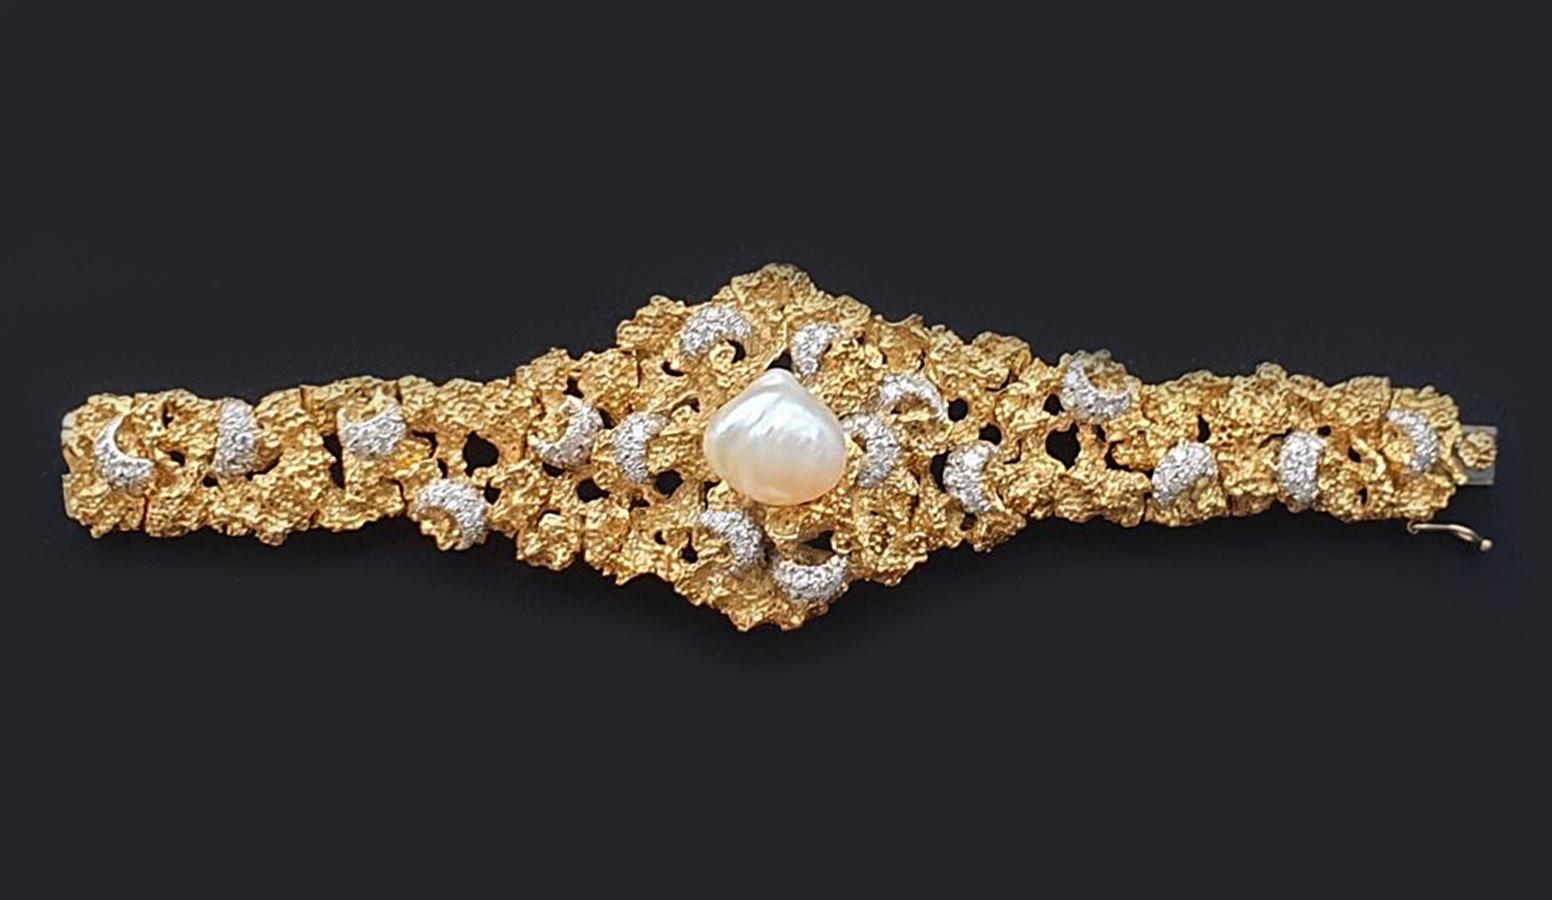 Dieses barocke Perlen- und Diamantarmband ist ein elegantes Schmuckstück, in dessen Mittelpunkt eine wunderschöne, unregelmäßig geformte Perle steht. Die Perle ist von funkelnden Diamanten umgeben, die in 18 Karat Gelbgold gefasst sind und dem